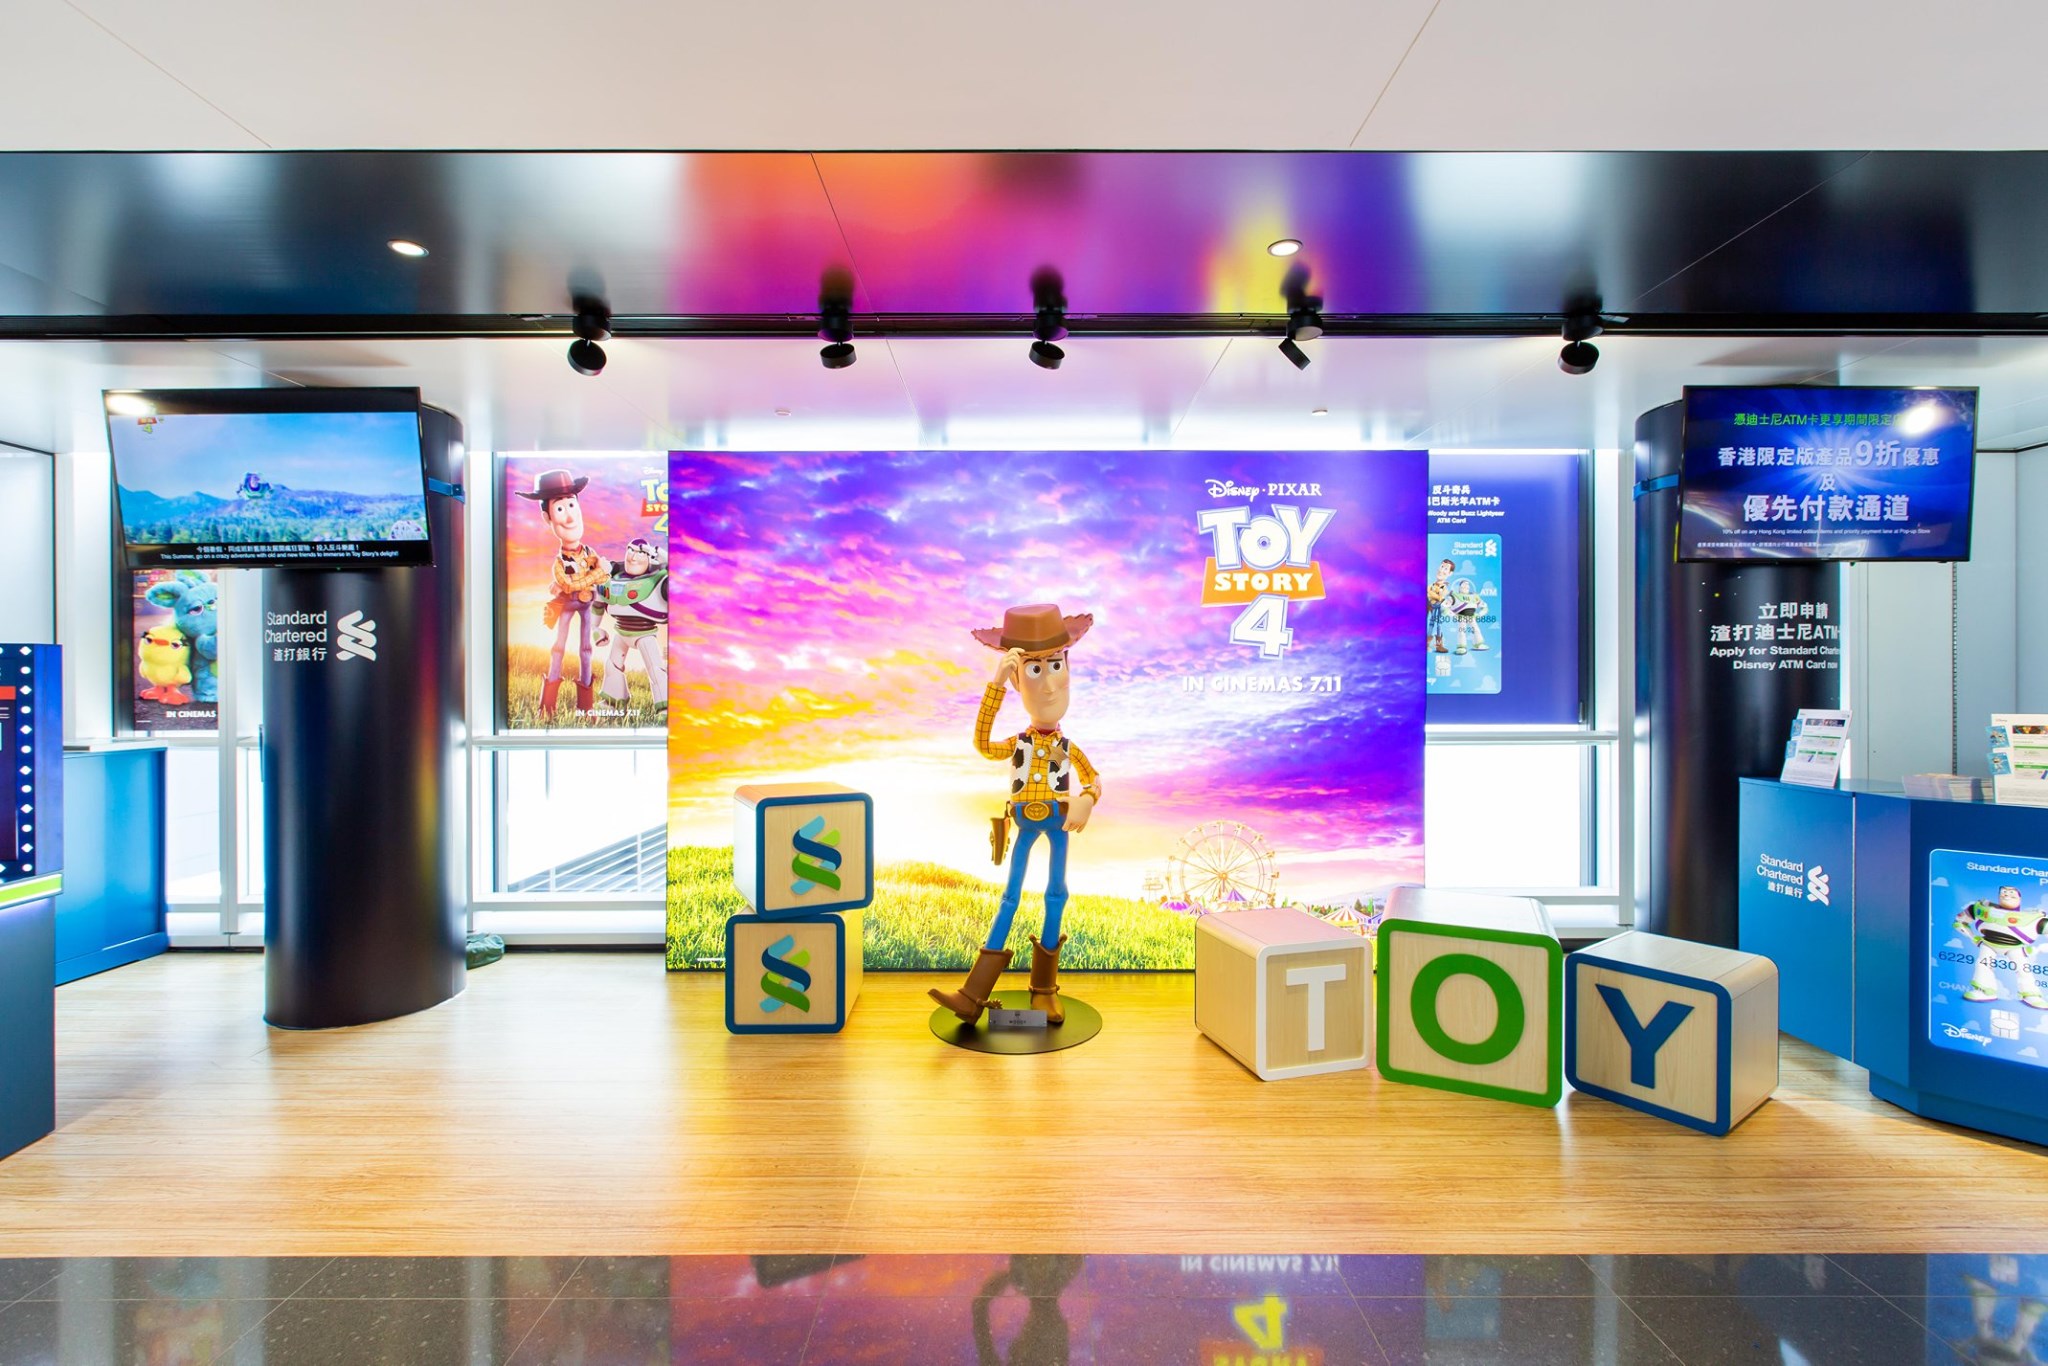 【搶先嚟海港城Our Toy Stories 勁多《反斗奇兵4》打卡位等緊你！】 而家嚟渣打專櫃同胡迪影相同參加抽獎，就有機會獲贈HK$25海港城美食優惠劵。渣打迪士尼ATM卡持卡人可憑卡於Toy Story 4期間限定店享香港限定版產品9折優惠，以及優先付款通道！就算未持有迪士尼ATM卡，只要即場喺渣打專櫃開戶及申請迪士尼ATM卡，都即時享有同樣優惠㗎！ 活動日期：6月29日至8月4日...